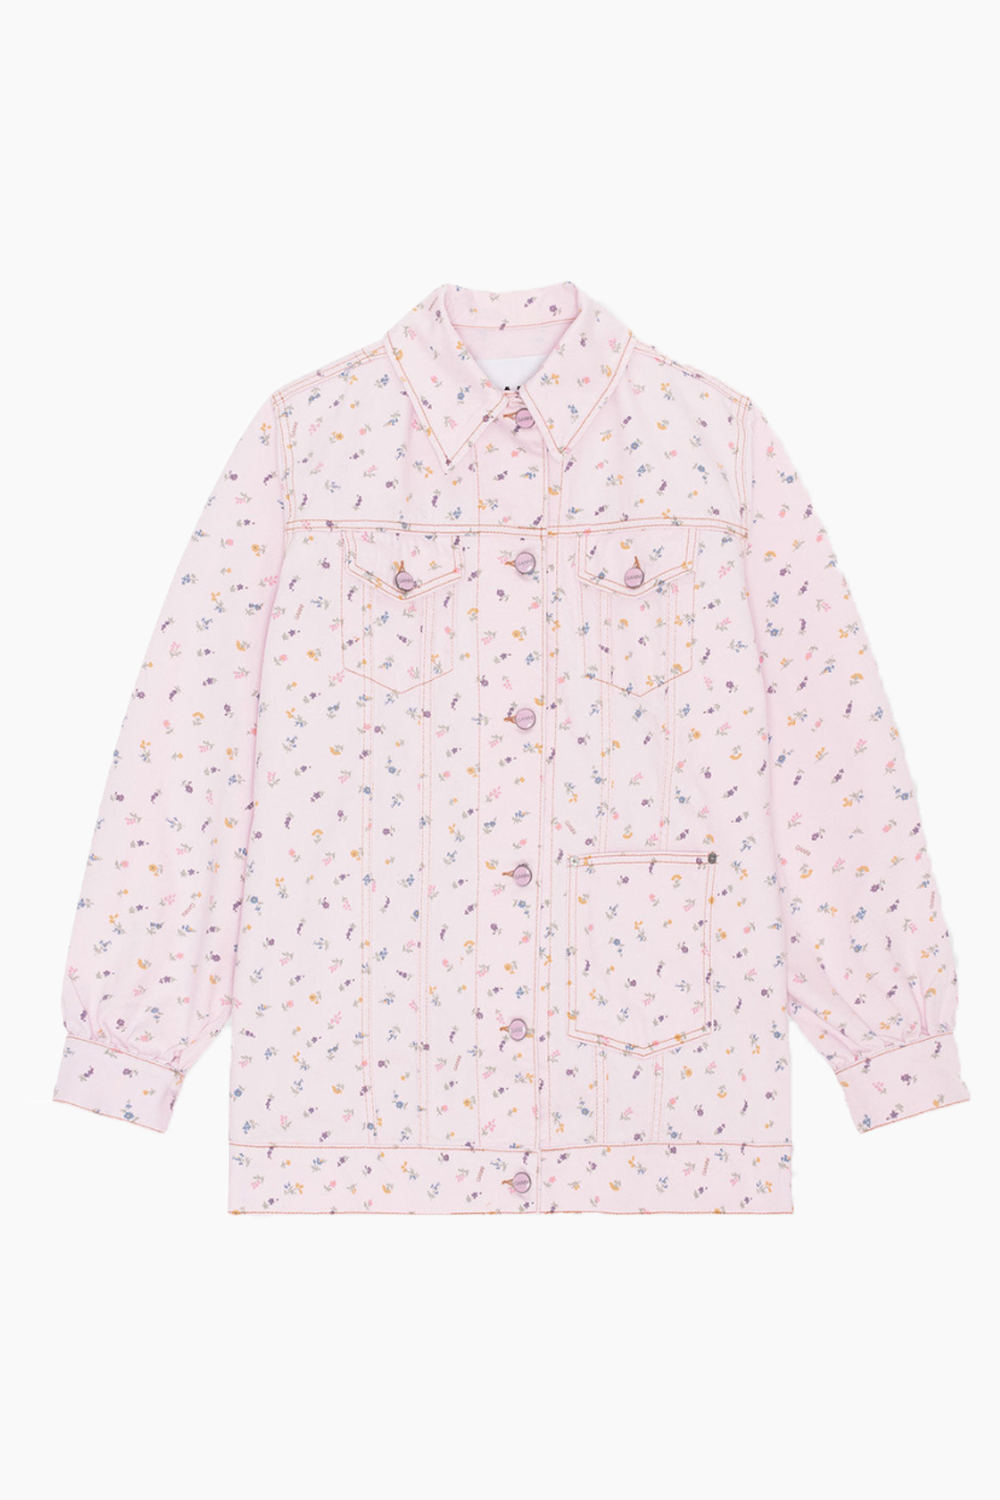 Tegn et billede Havanemone effekt Oversized Jacket Print Denim i farven Pink fra GANNI - køb hos QNTS! –  QNTS.dk